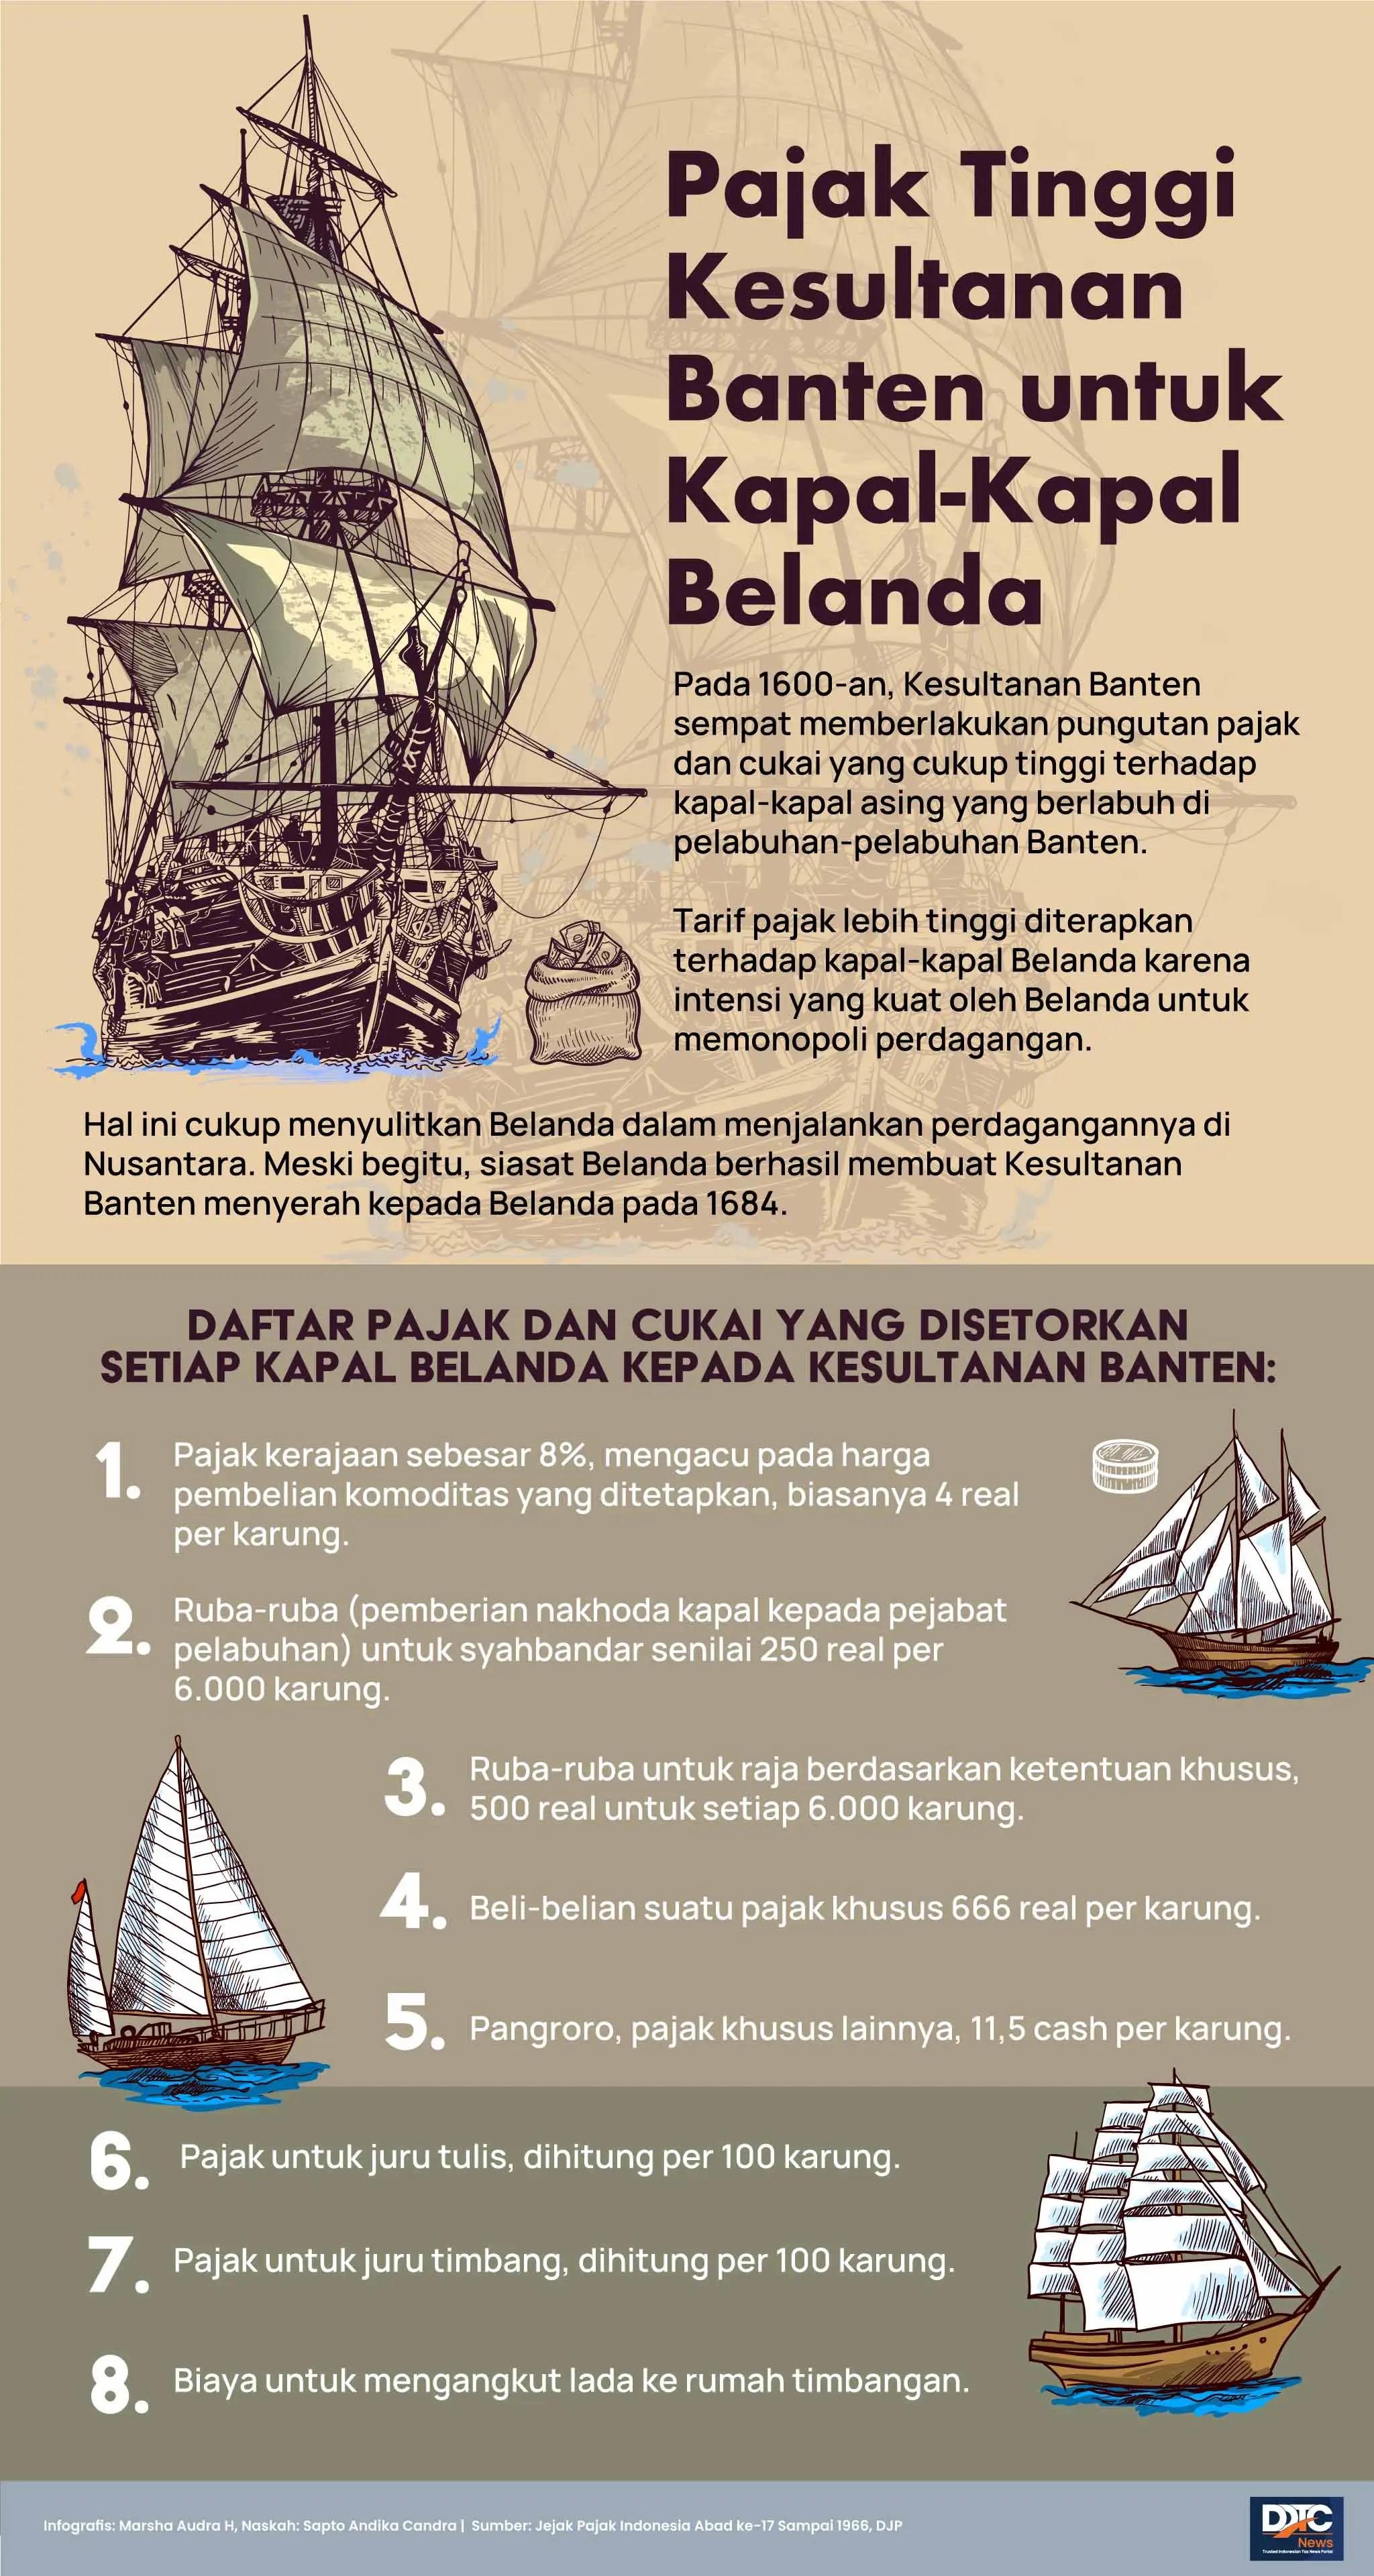 Pajak Tinggi Kesultanan Banten untuk Kapal-Kapal Belanda